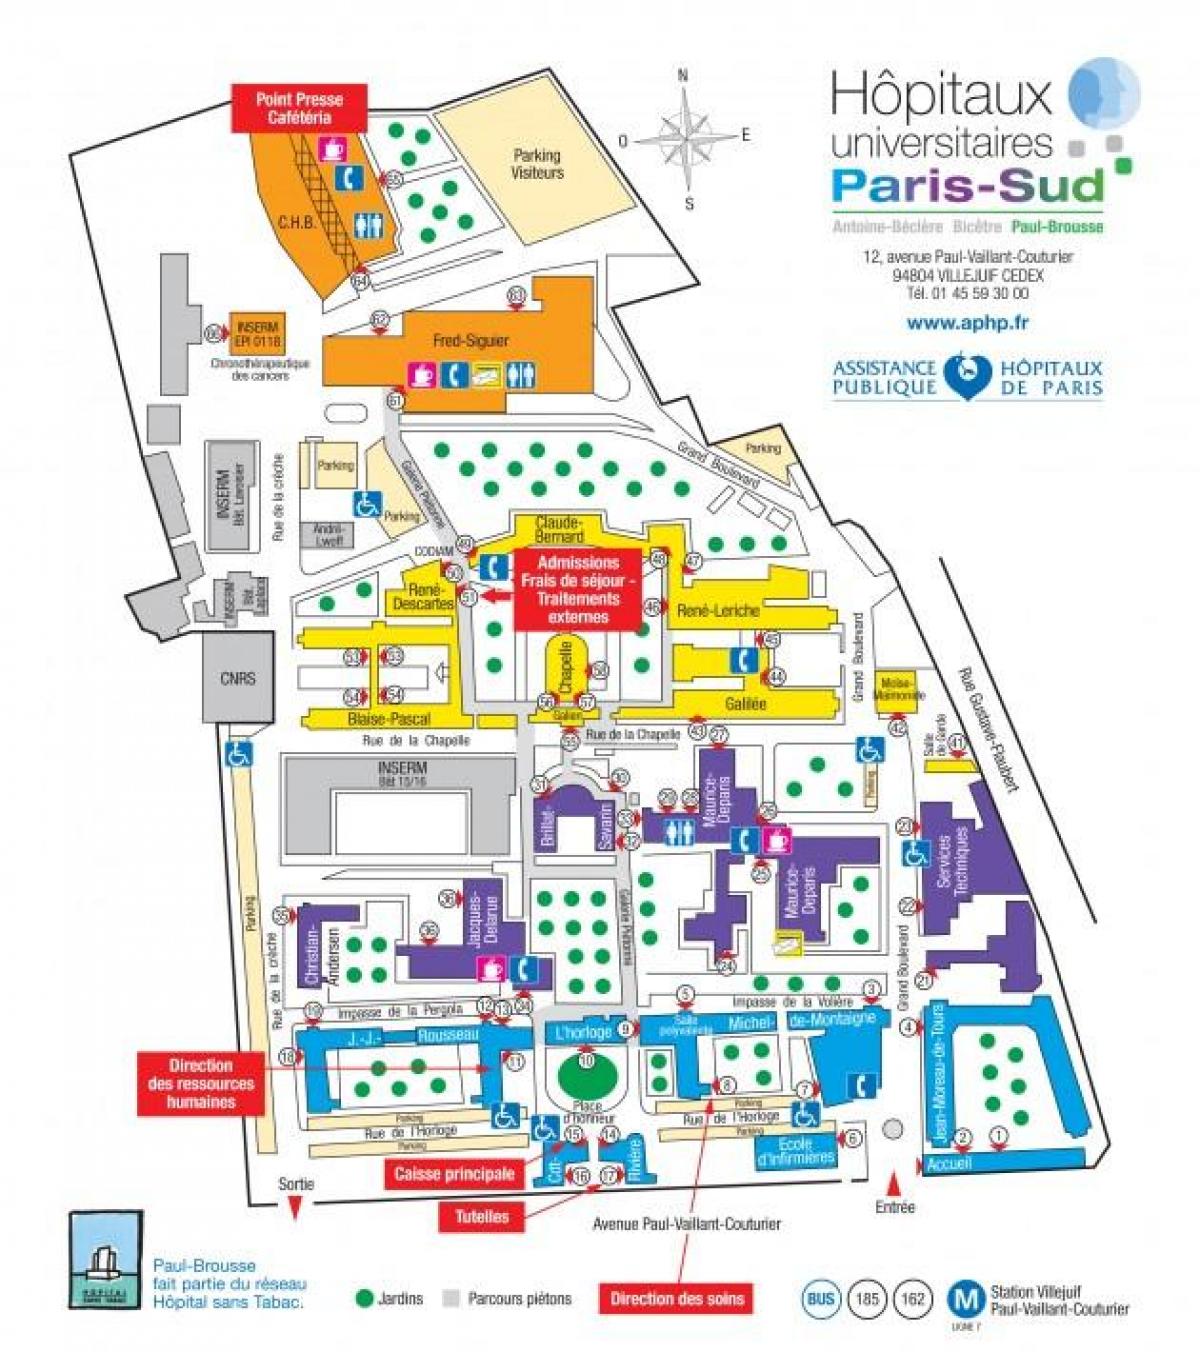 Քարտեզը Կես Brousse հիվանդանոցում